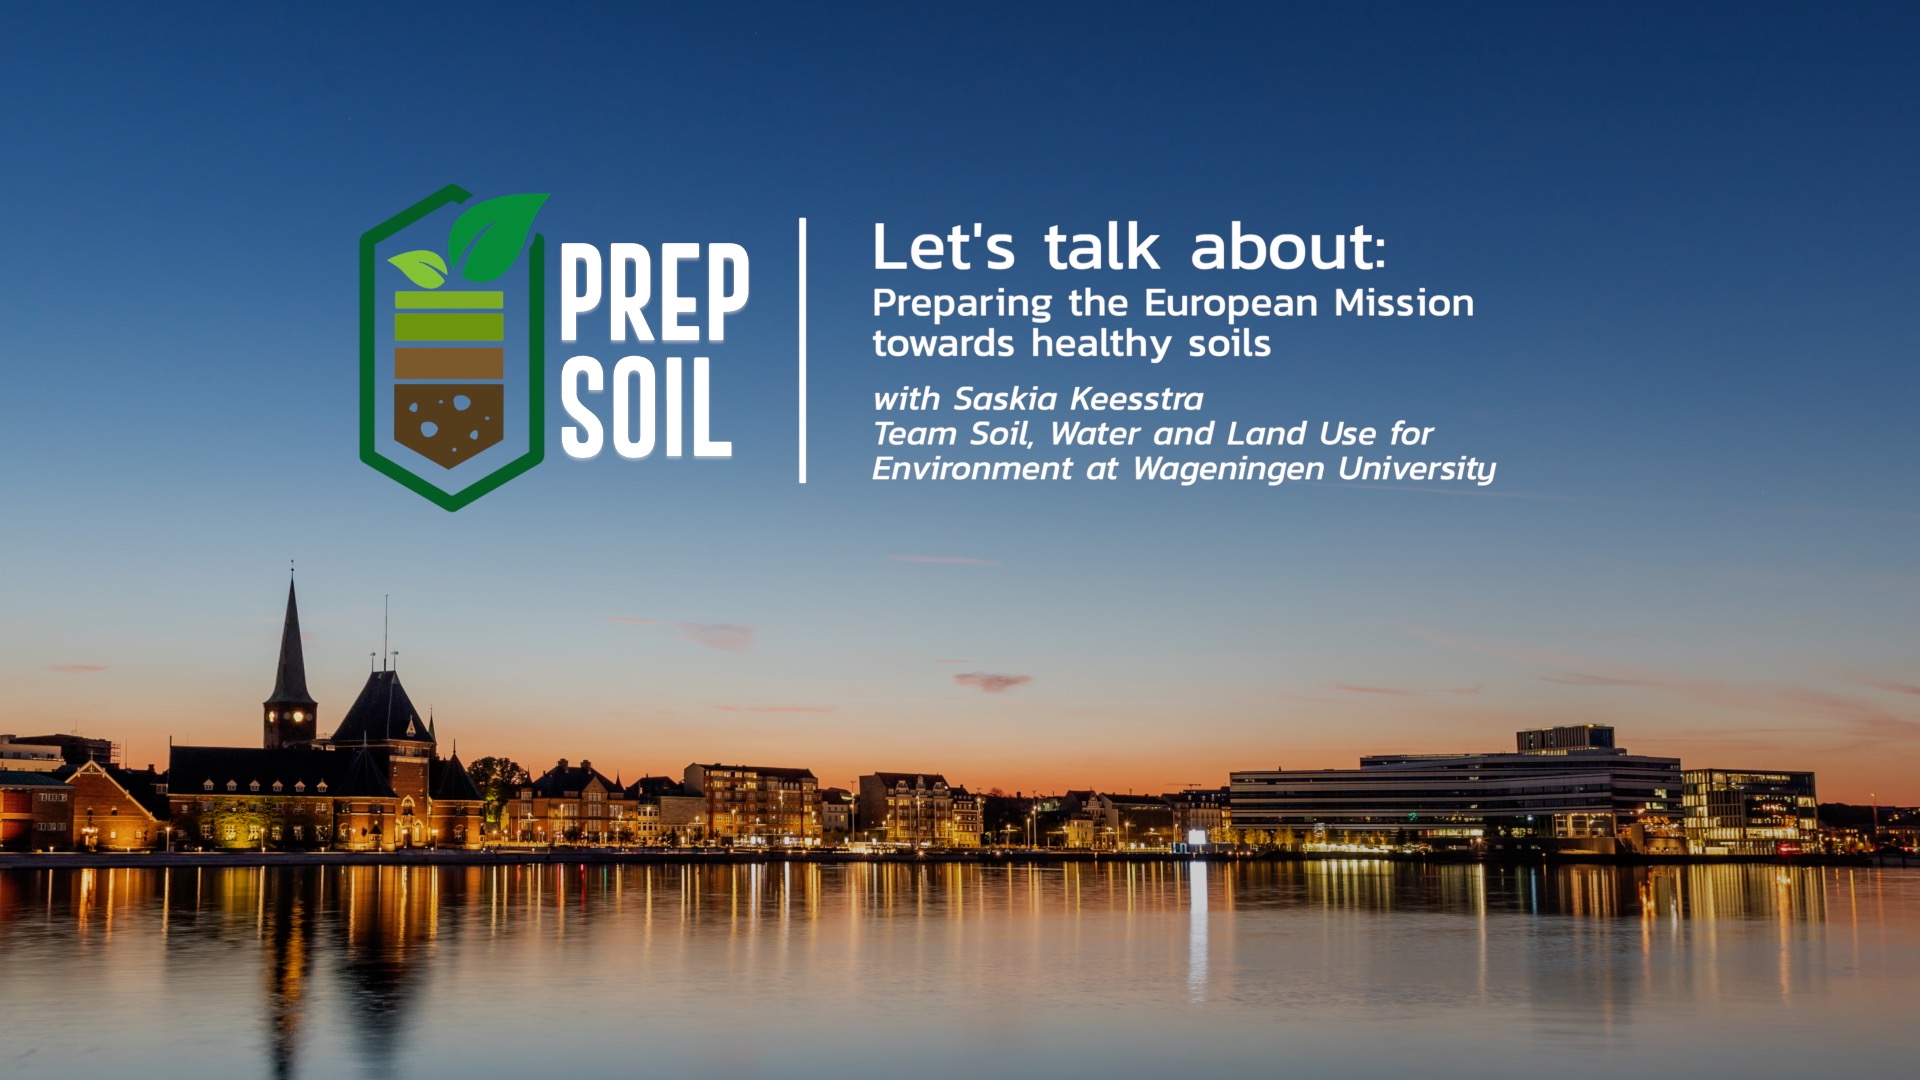 Video on soil needs by Saskia Keesstra from PREPSOIL